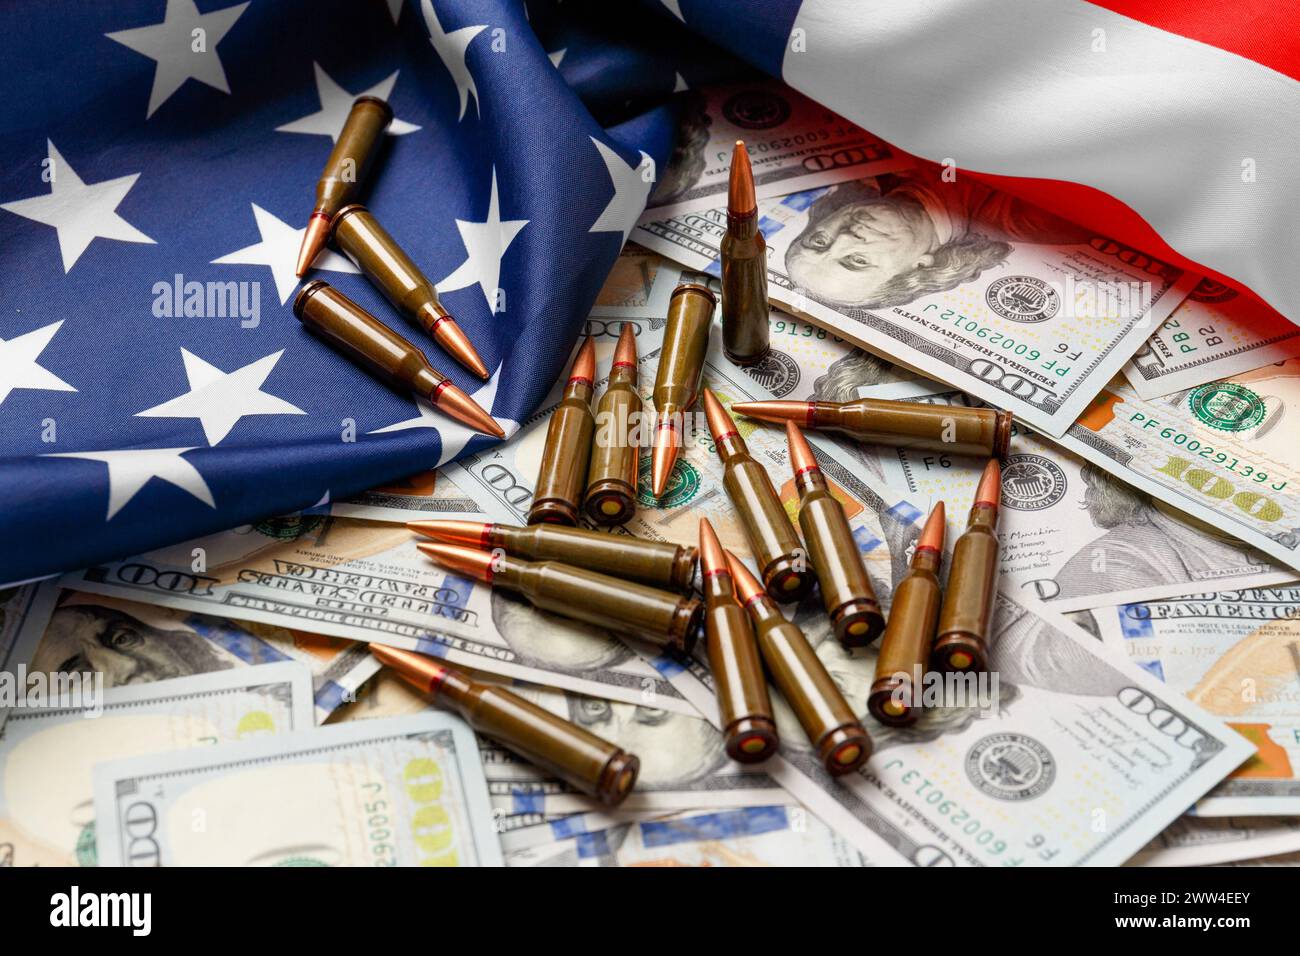 Amerikanische Flagge, Dollar, Kugeln, Patronen, Munition. Das Konzept des Leihpachtvertrags, der Armee, des Waffenverkaufs. Militärindustrie, Krieg, Weltwaffen Stockfoto